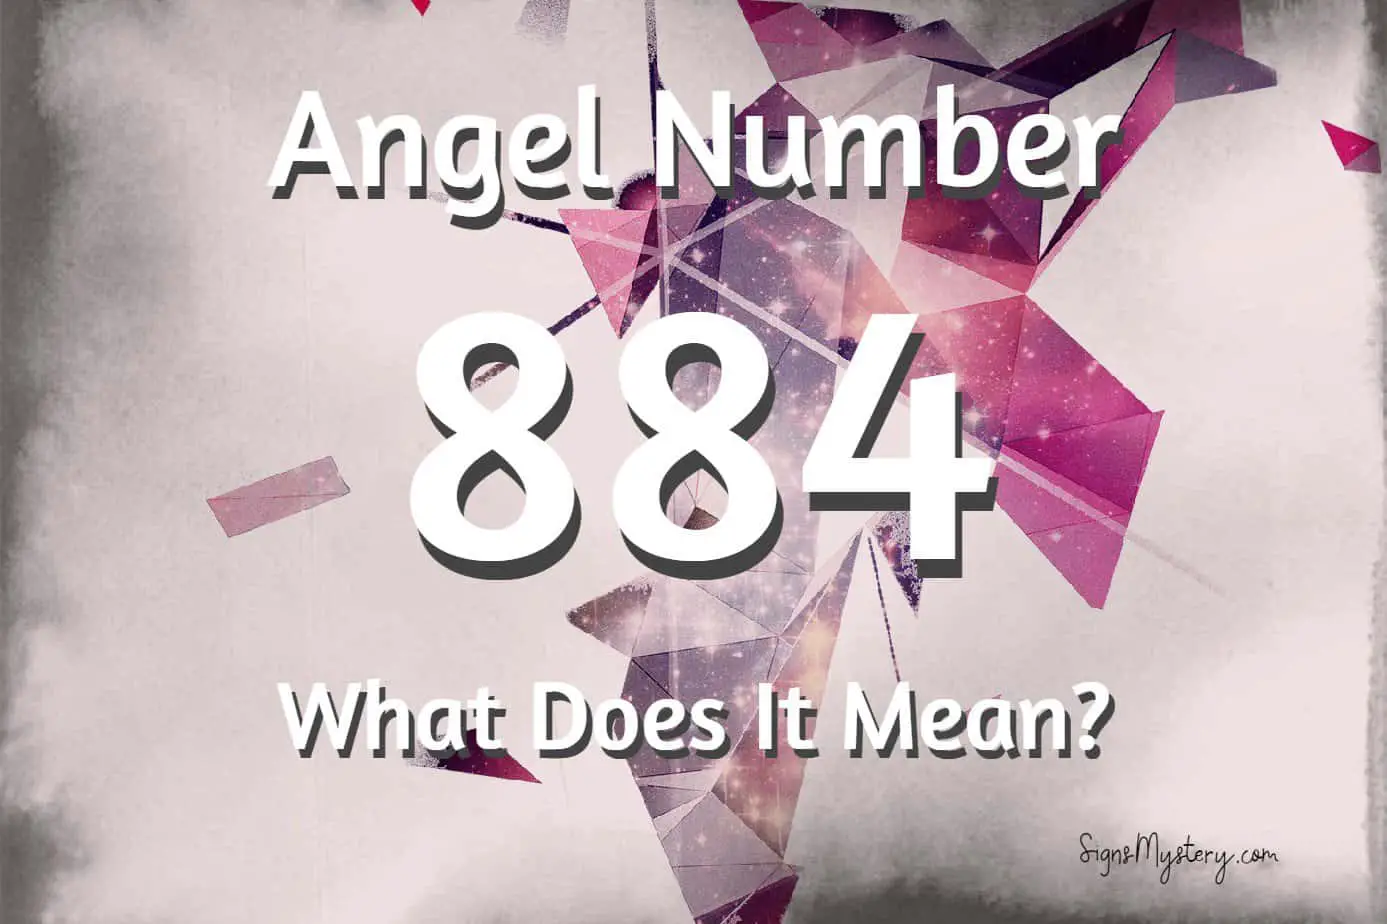 884 angel number